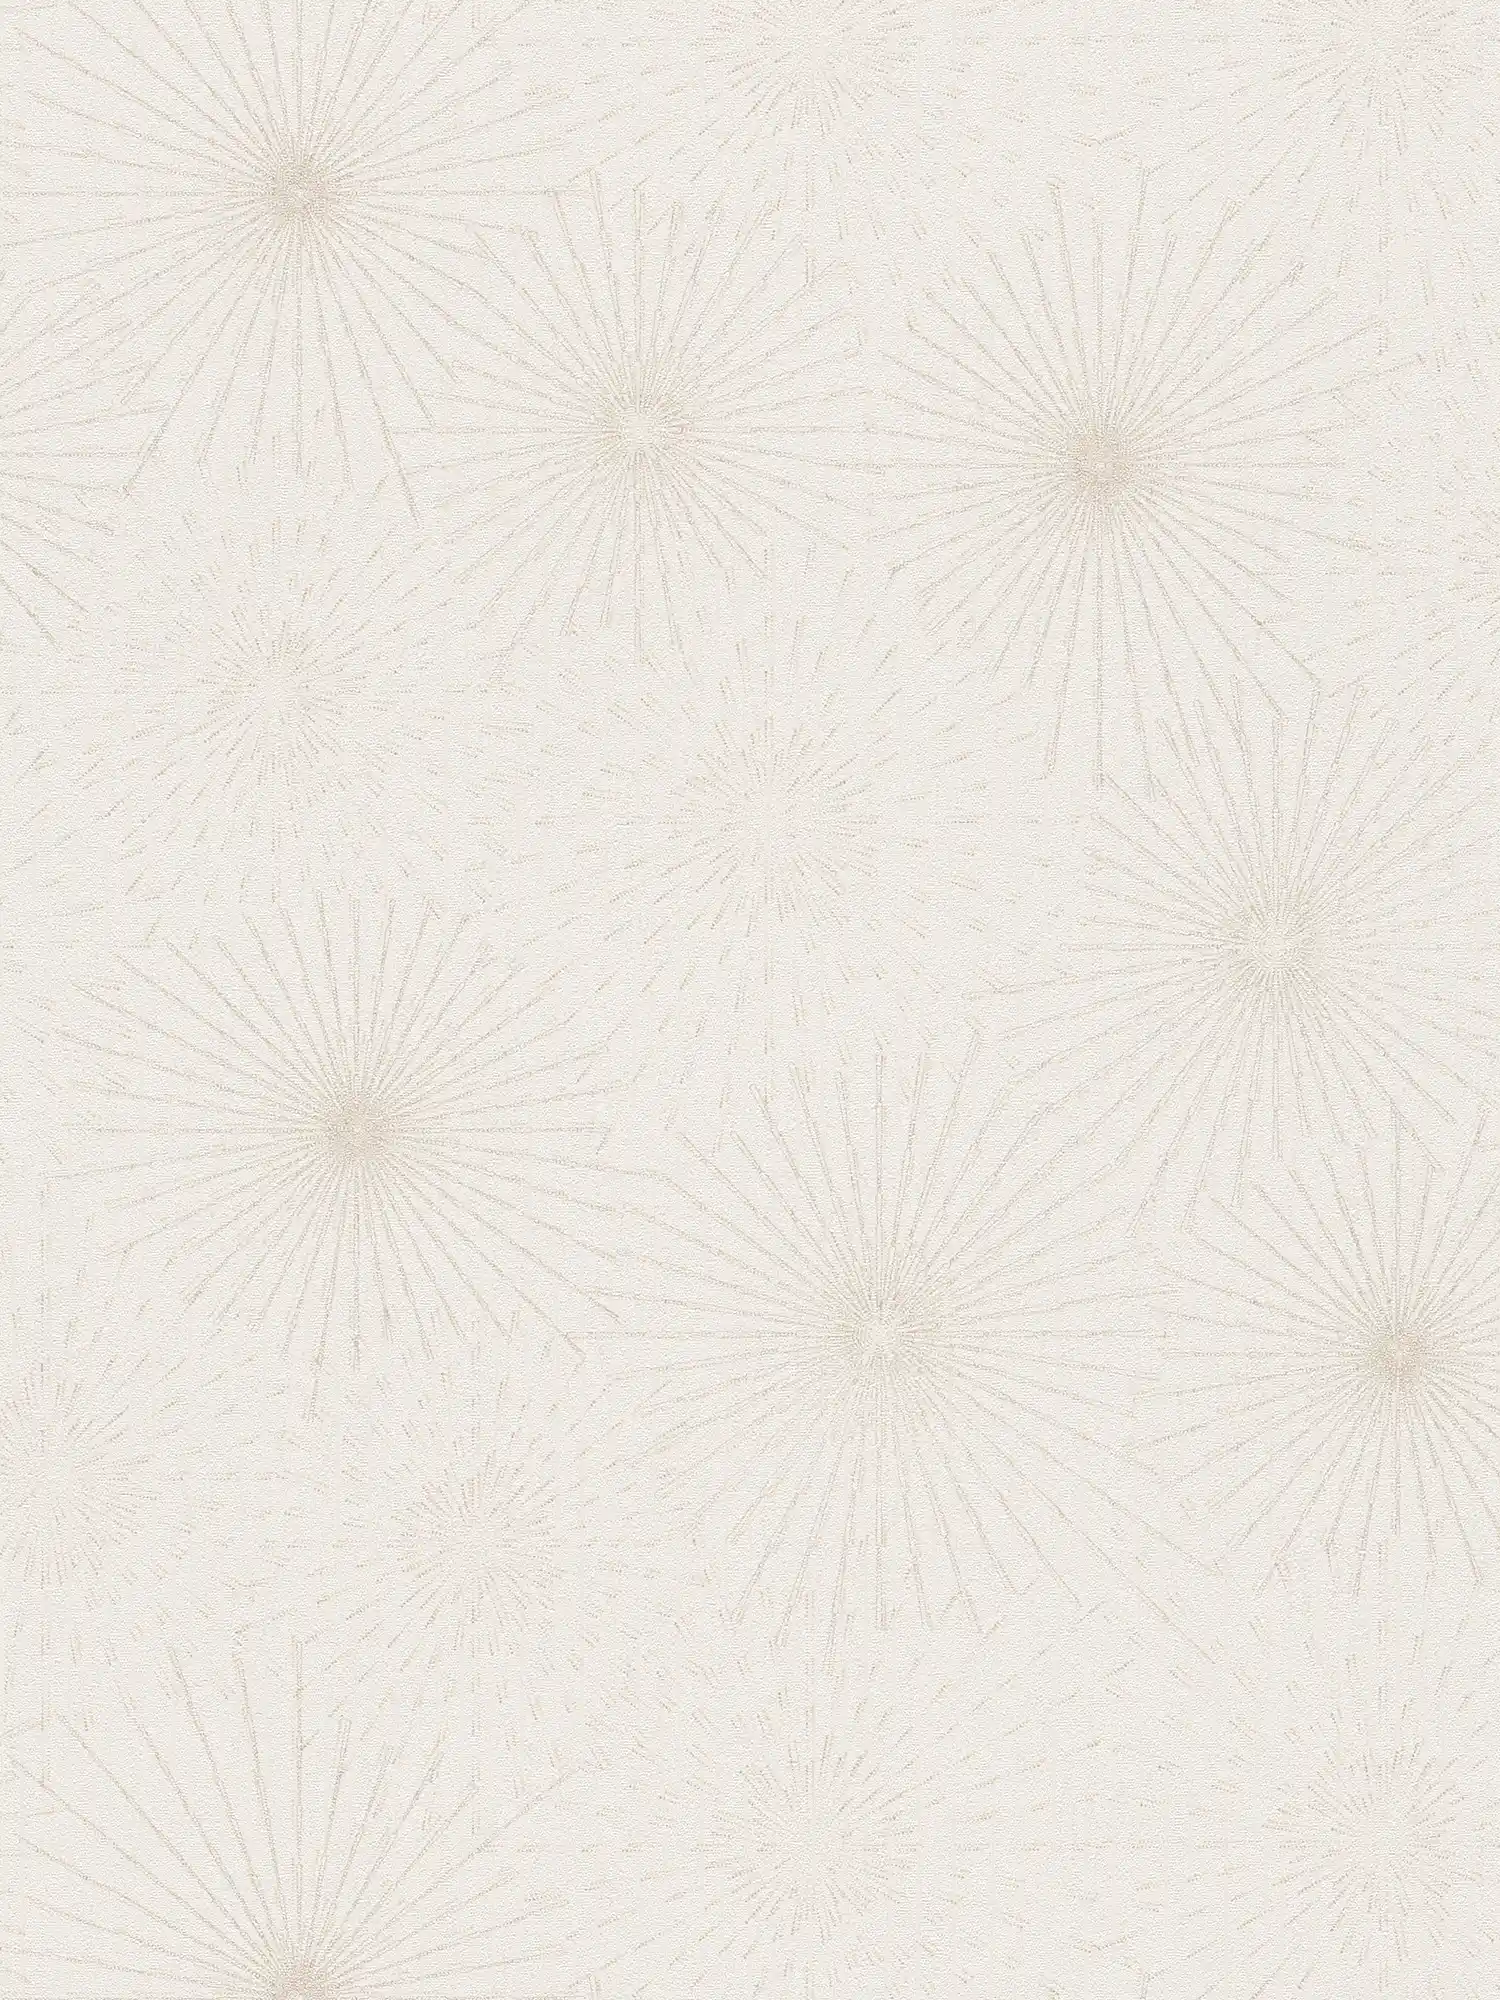 White wallpaper with retro metallic pattern Starburst - white
